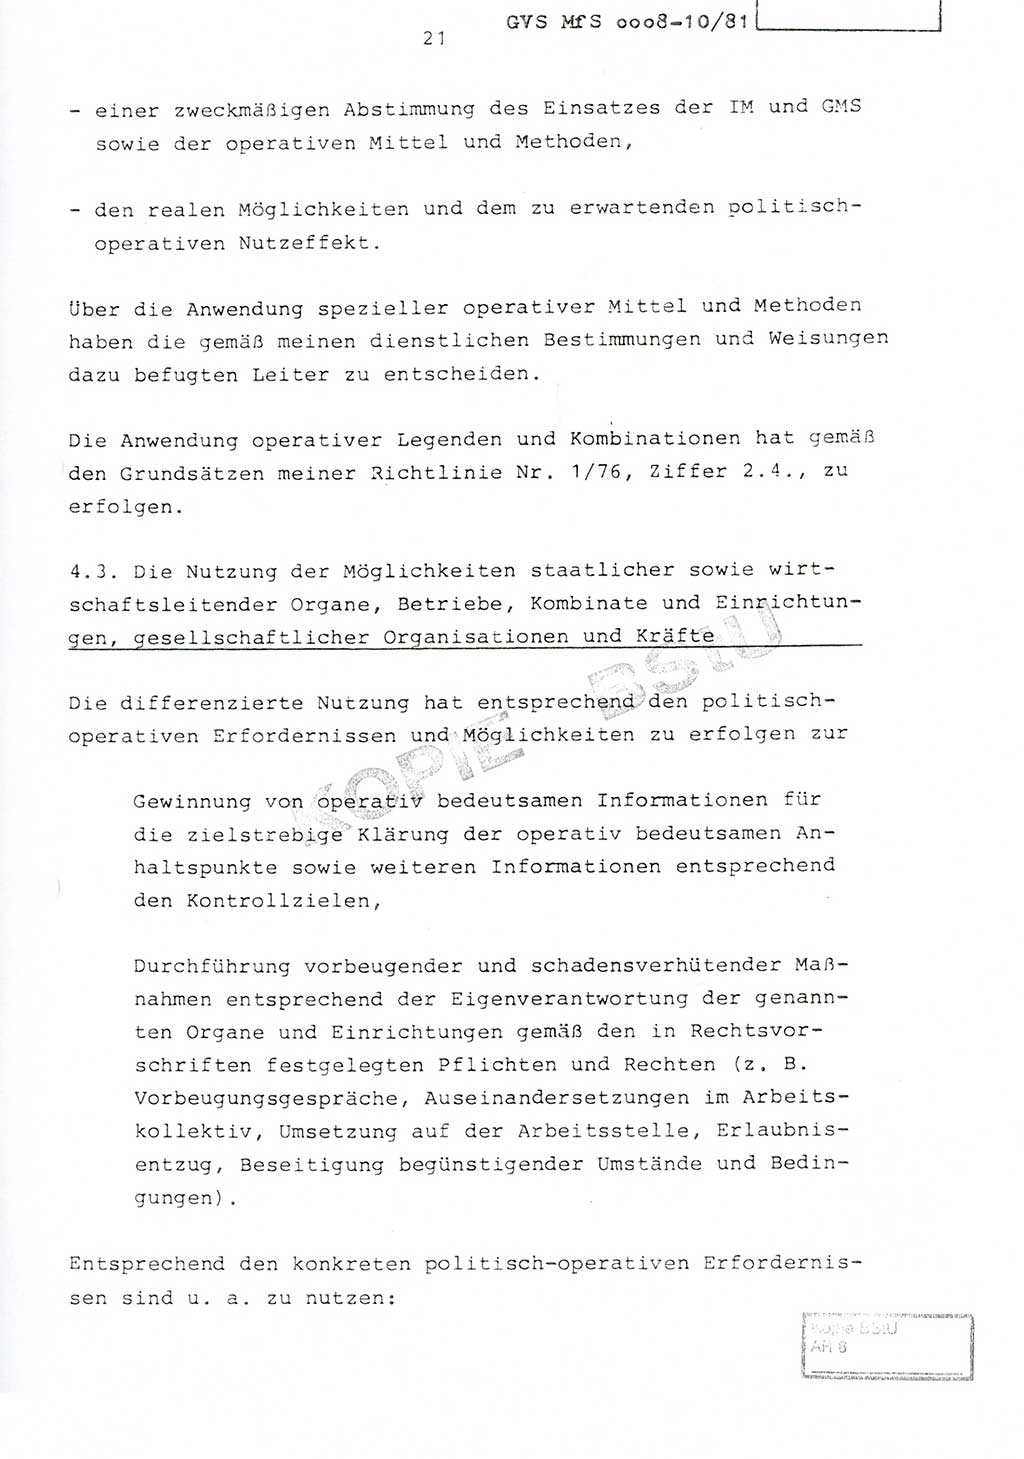 Richtlinie Nr. 1/81 über die operative Personenkontrolle (OPK), Ministerium für Staatssicherheit (MfS) [Deutsche Demokratische Republik (DDR)], Der Minister, Geheime Verschlußsache (GVS) ooo8-10/81, Berlin 1981, Blatt 21 (RL 1/81 OPK DDR MfS Min. GVS ooo8-10/81 1981, Bl. 21)